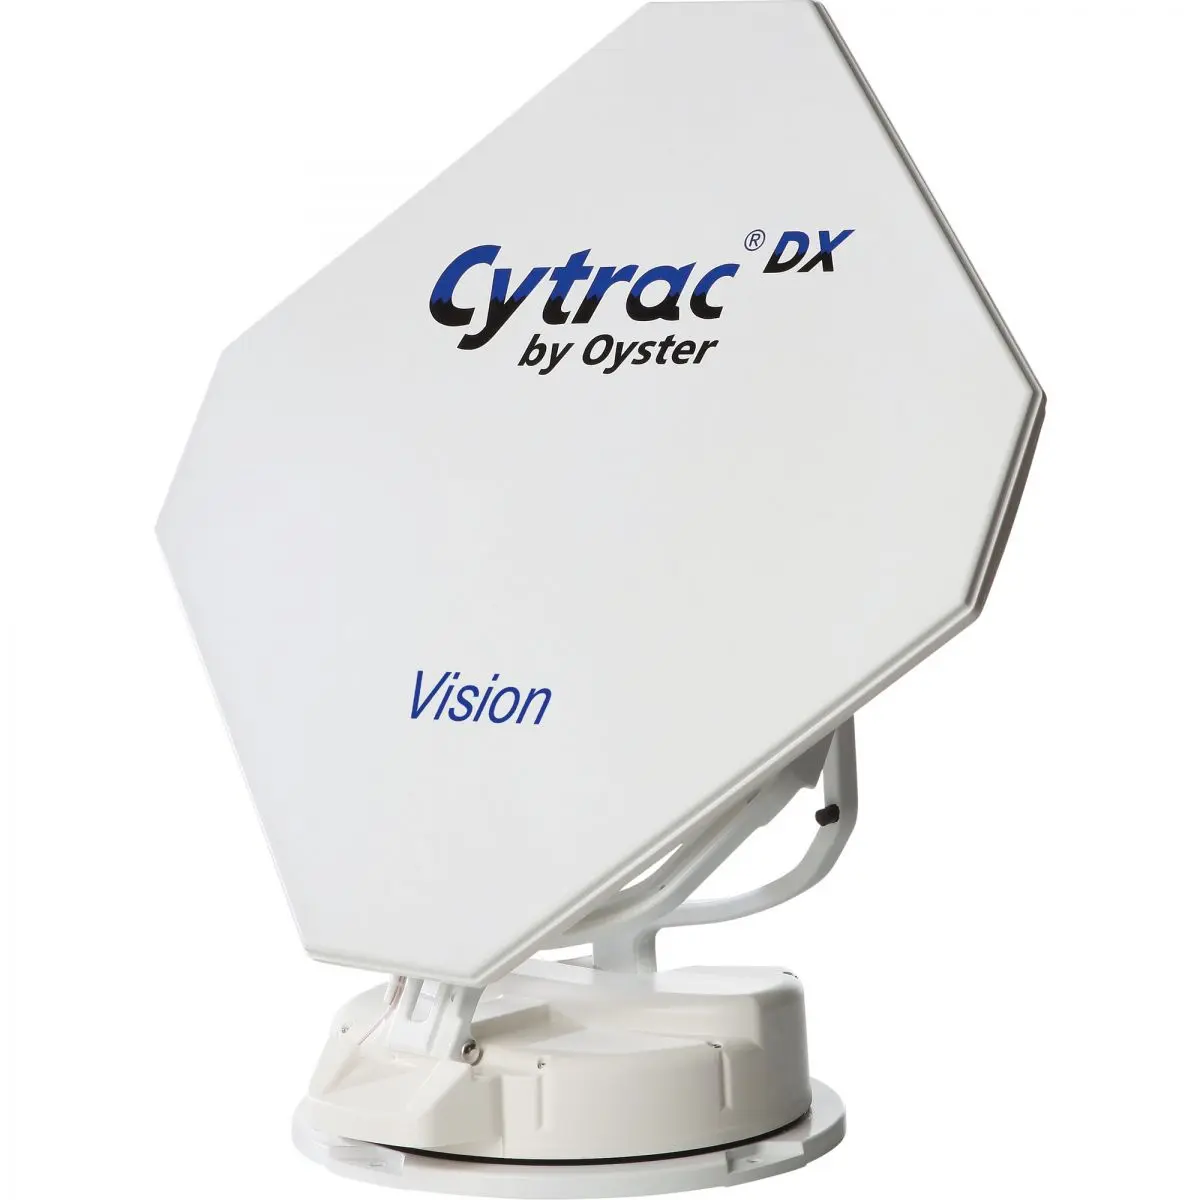 Sistem de satelit Cytrac DX Vision Single